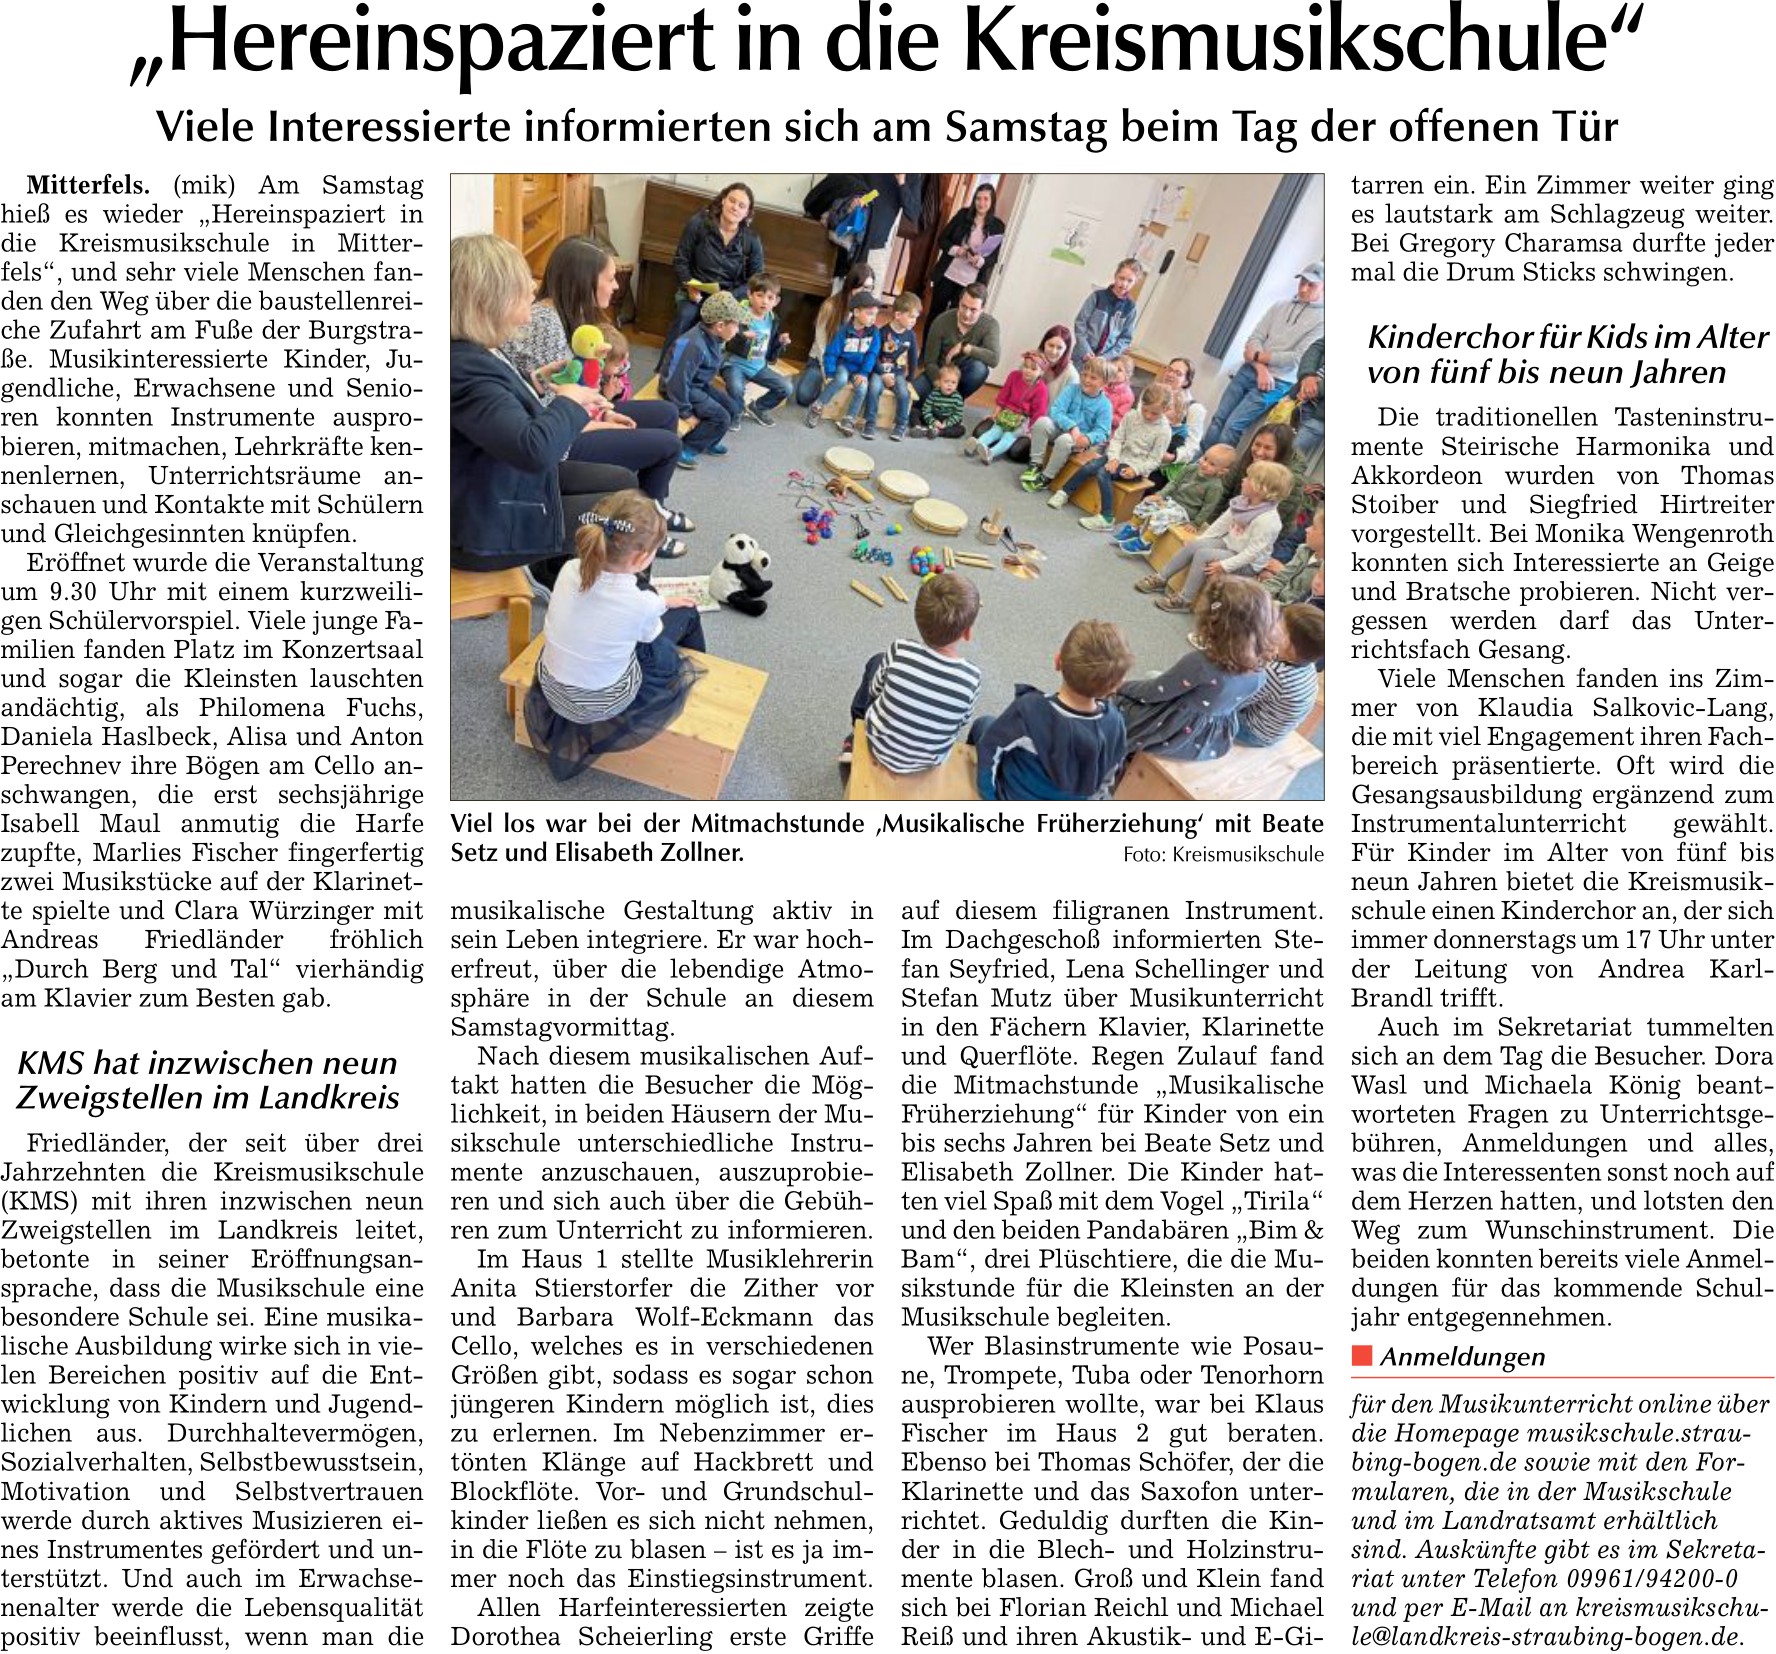 Bild zu "Hereinspaziert in die Kreismusikschule", Bogener Zeitung 8.5.2024